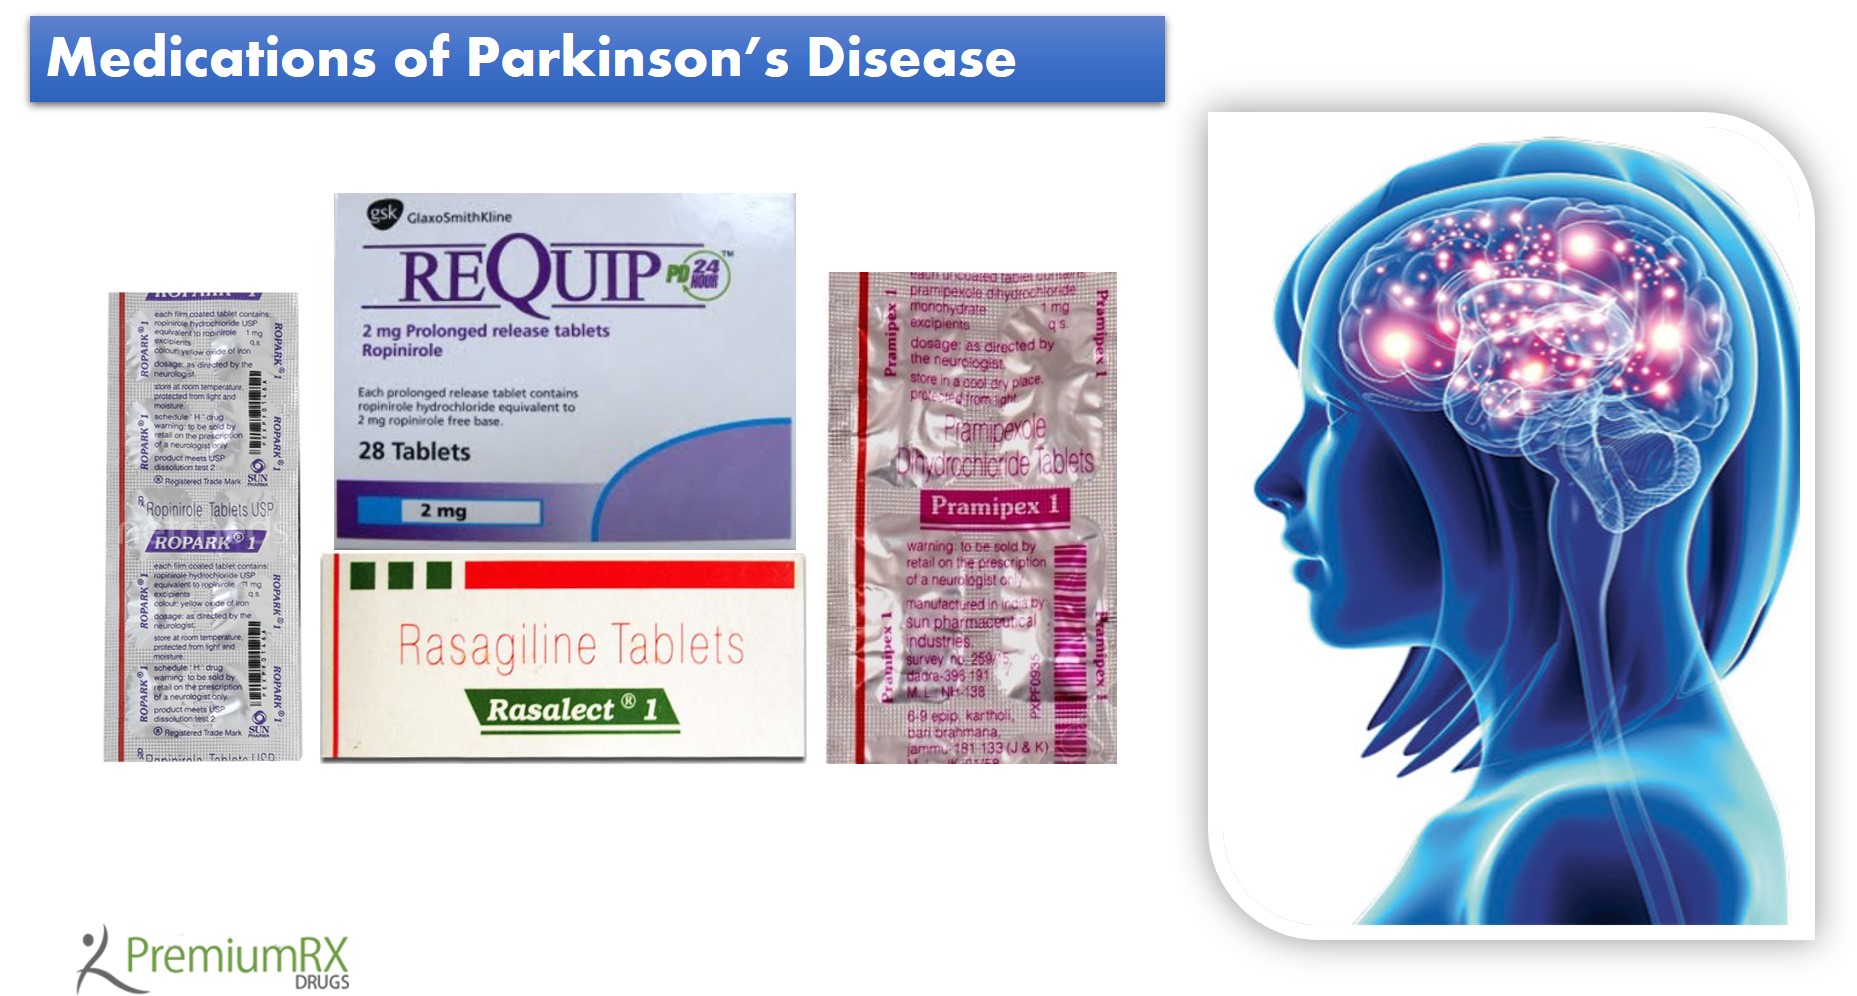 Medications of Parkinson’s Disease